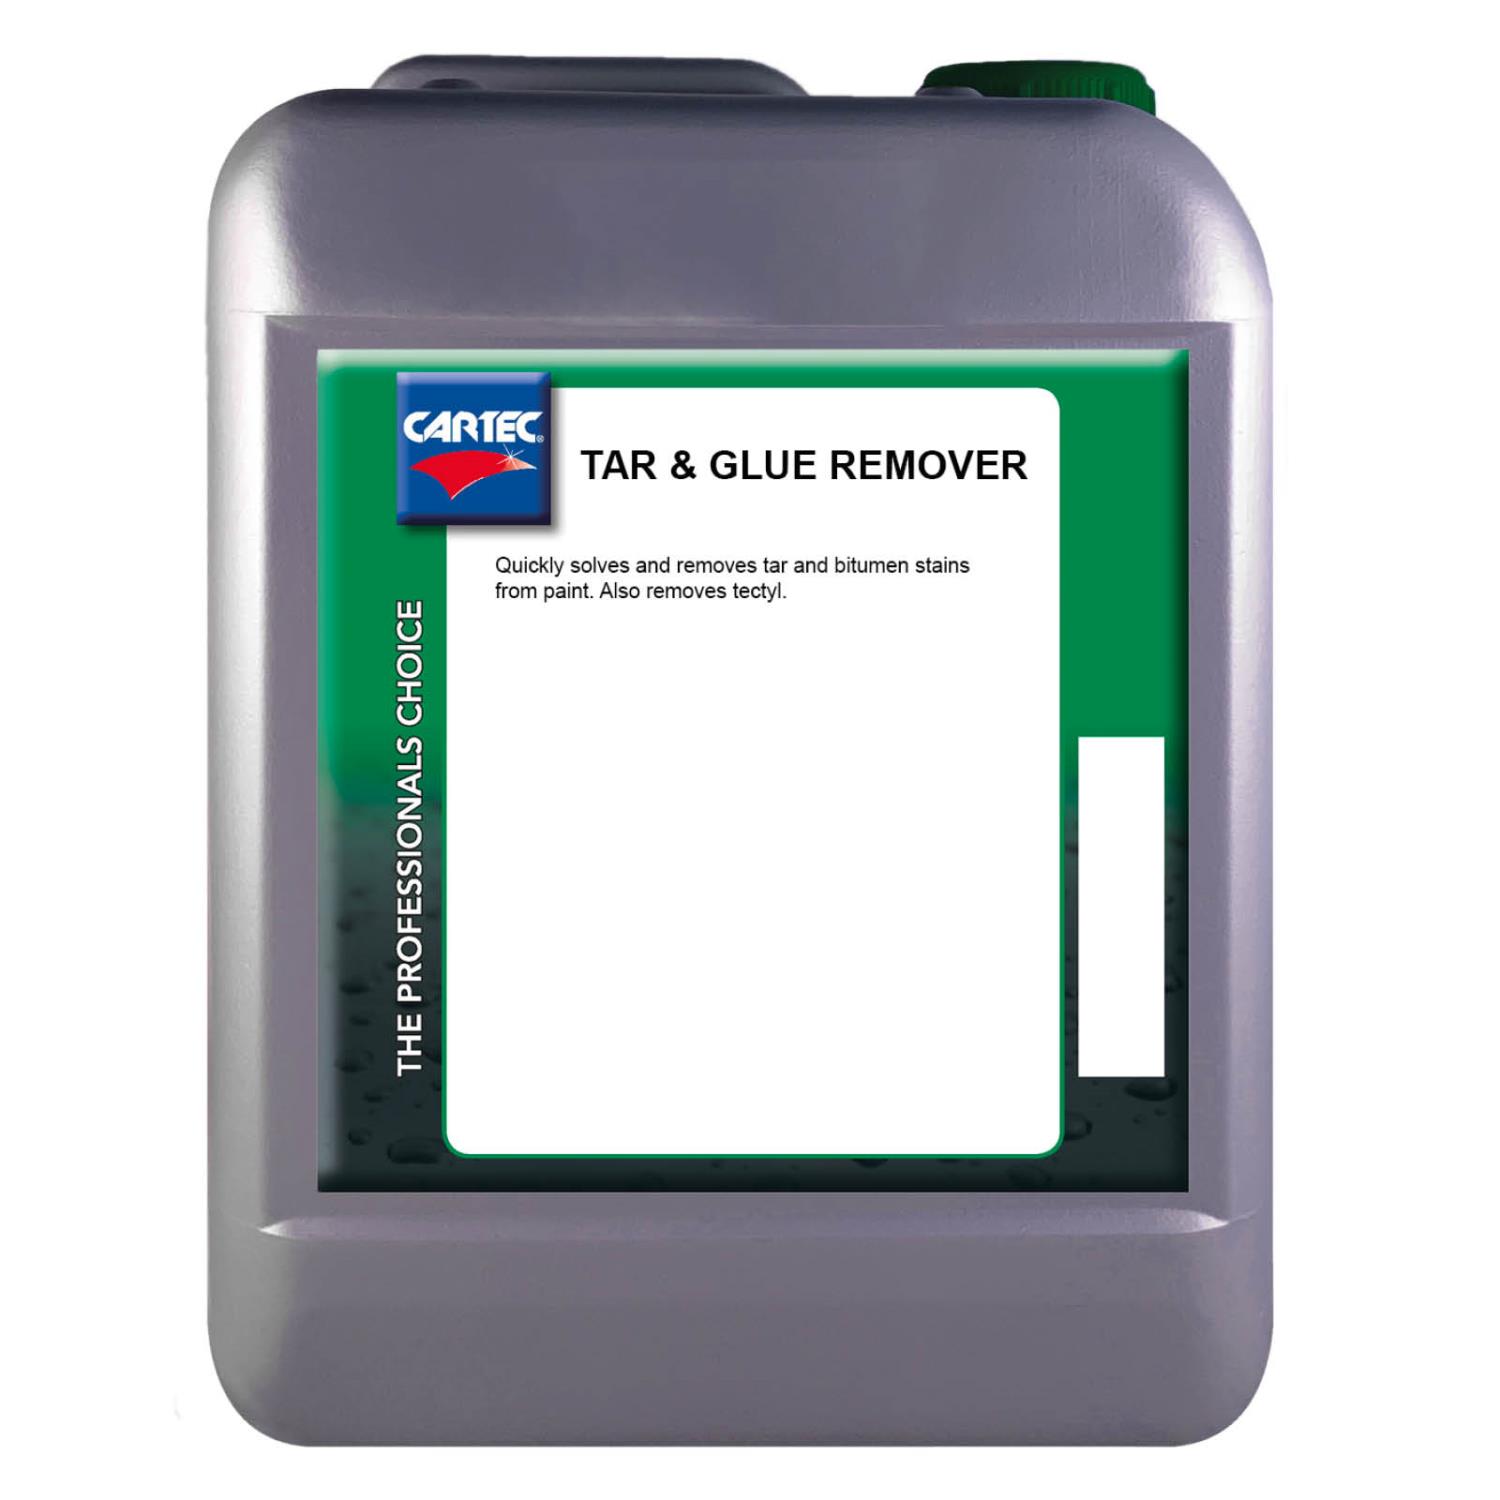 Cartec Tar & Glue Remover 5 Ltr.